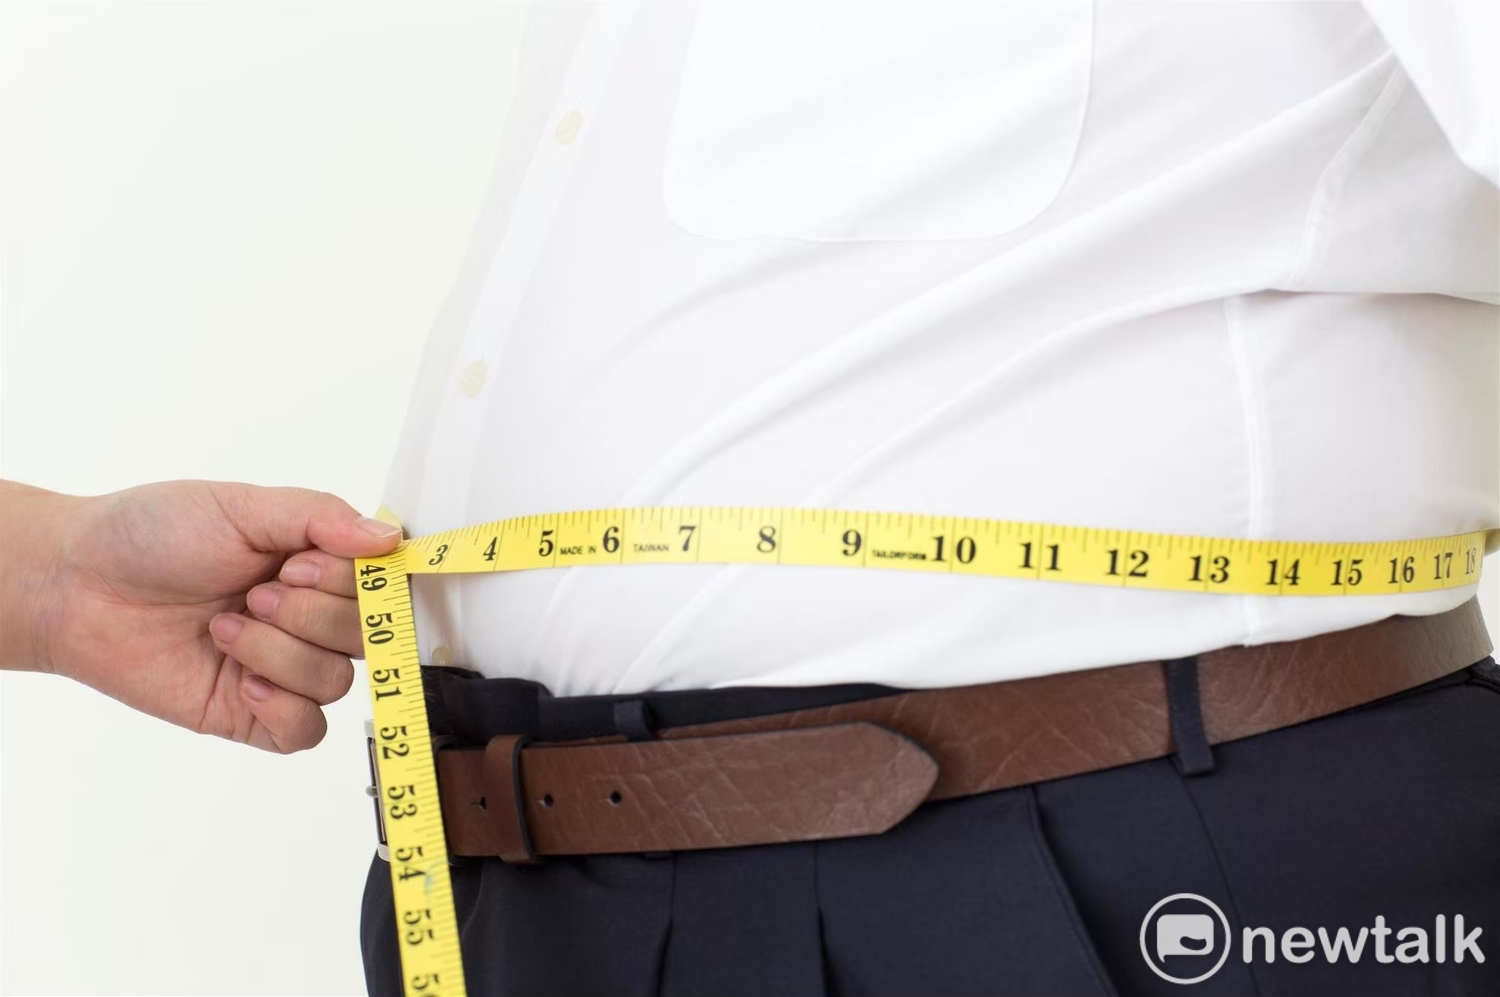 中國肥胖者數量超過美國 科學家警告「非常嚴重」：情況會越來越糟